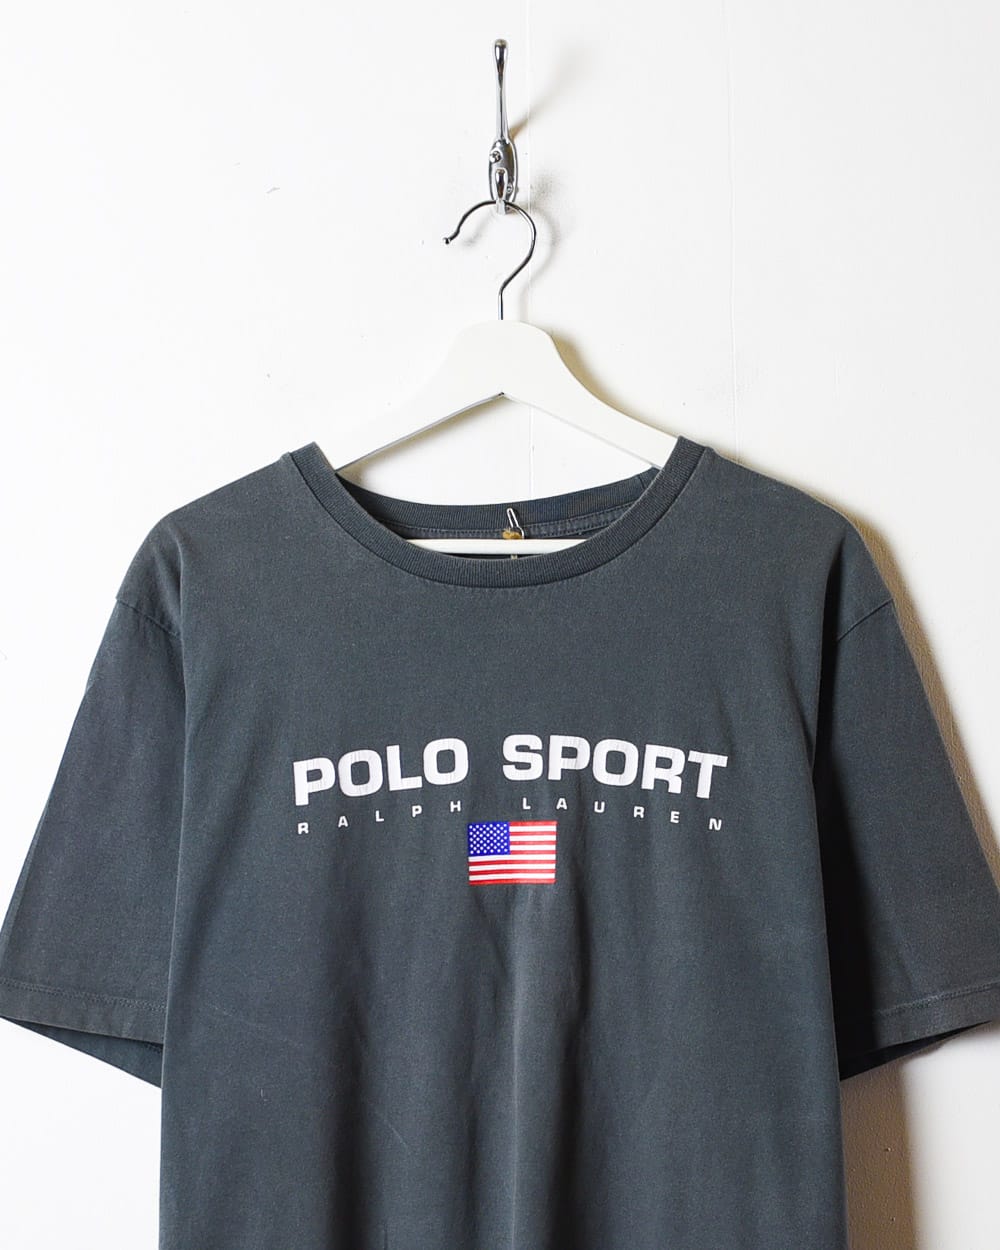 Grey Polo Sport Ralph Lauren T-Shirt - Large